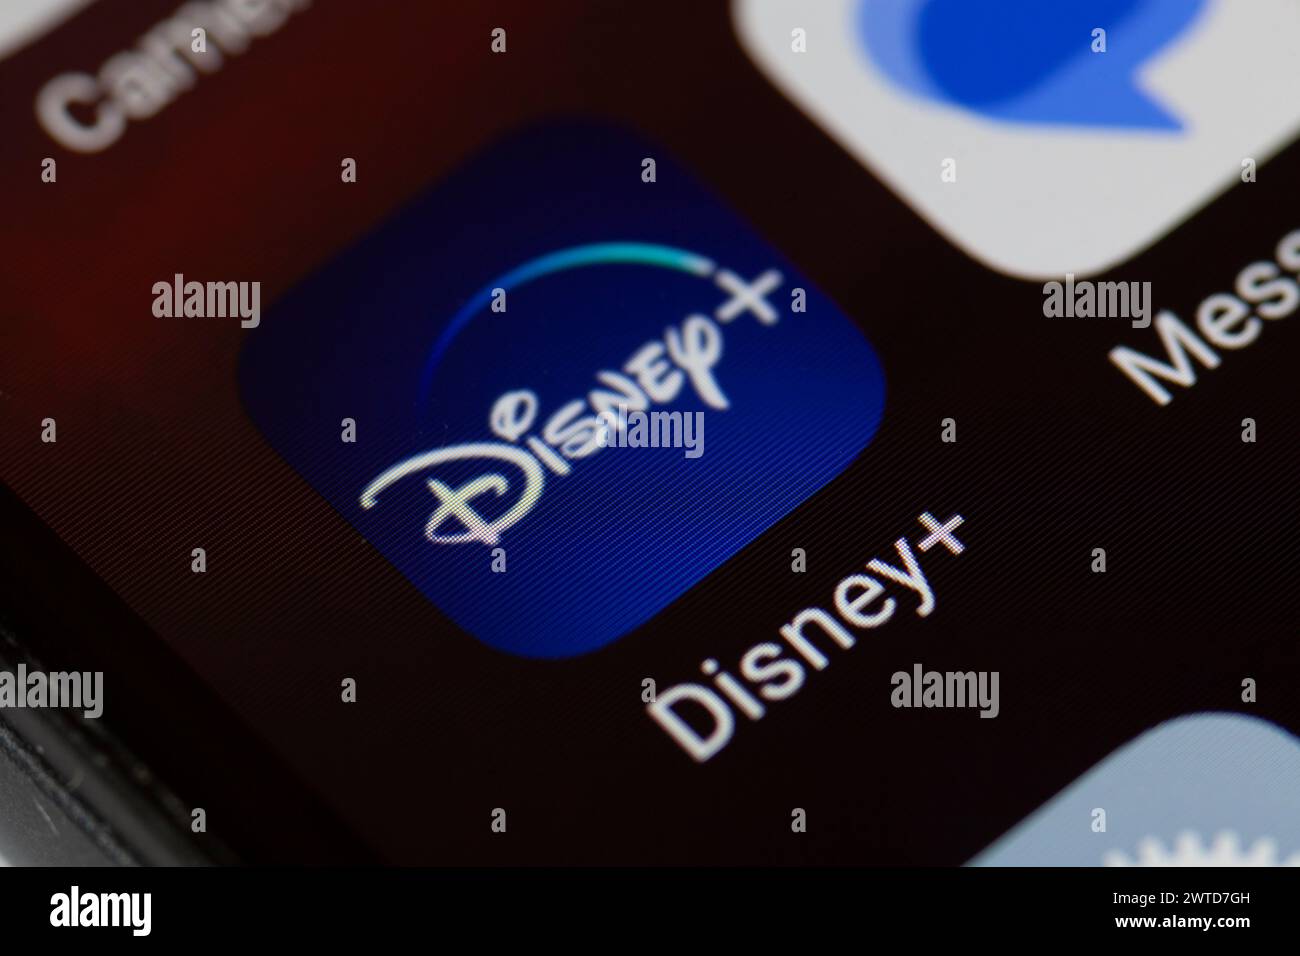 Disney+ app icon on mobile phone Stock Photo